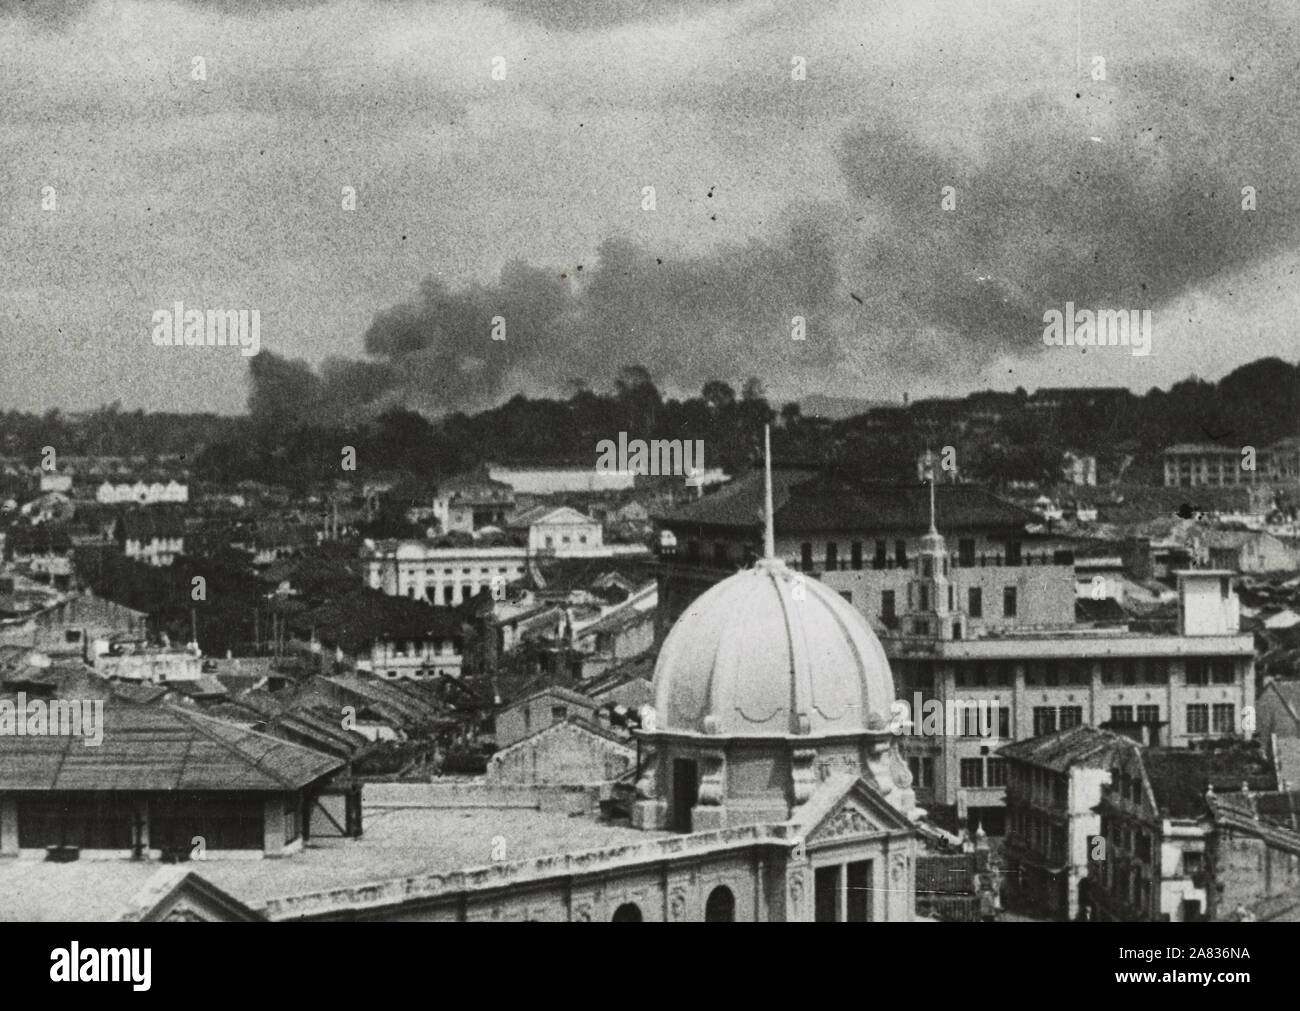 Derniers jours à Singapour - La photographie montre la vue d'ensemble de Singapour au cours d'un raid aérien japonais. 1942 Banque D'Images